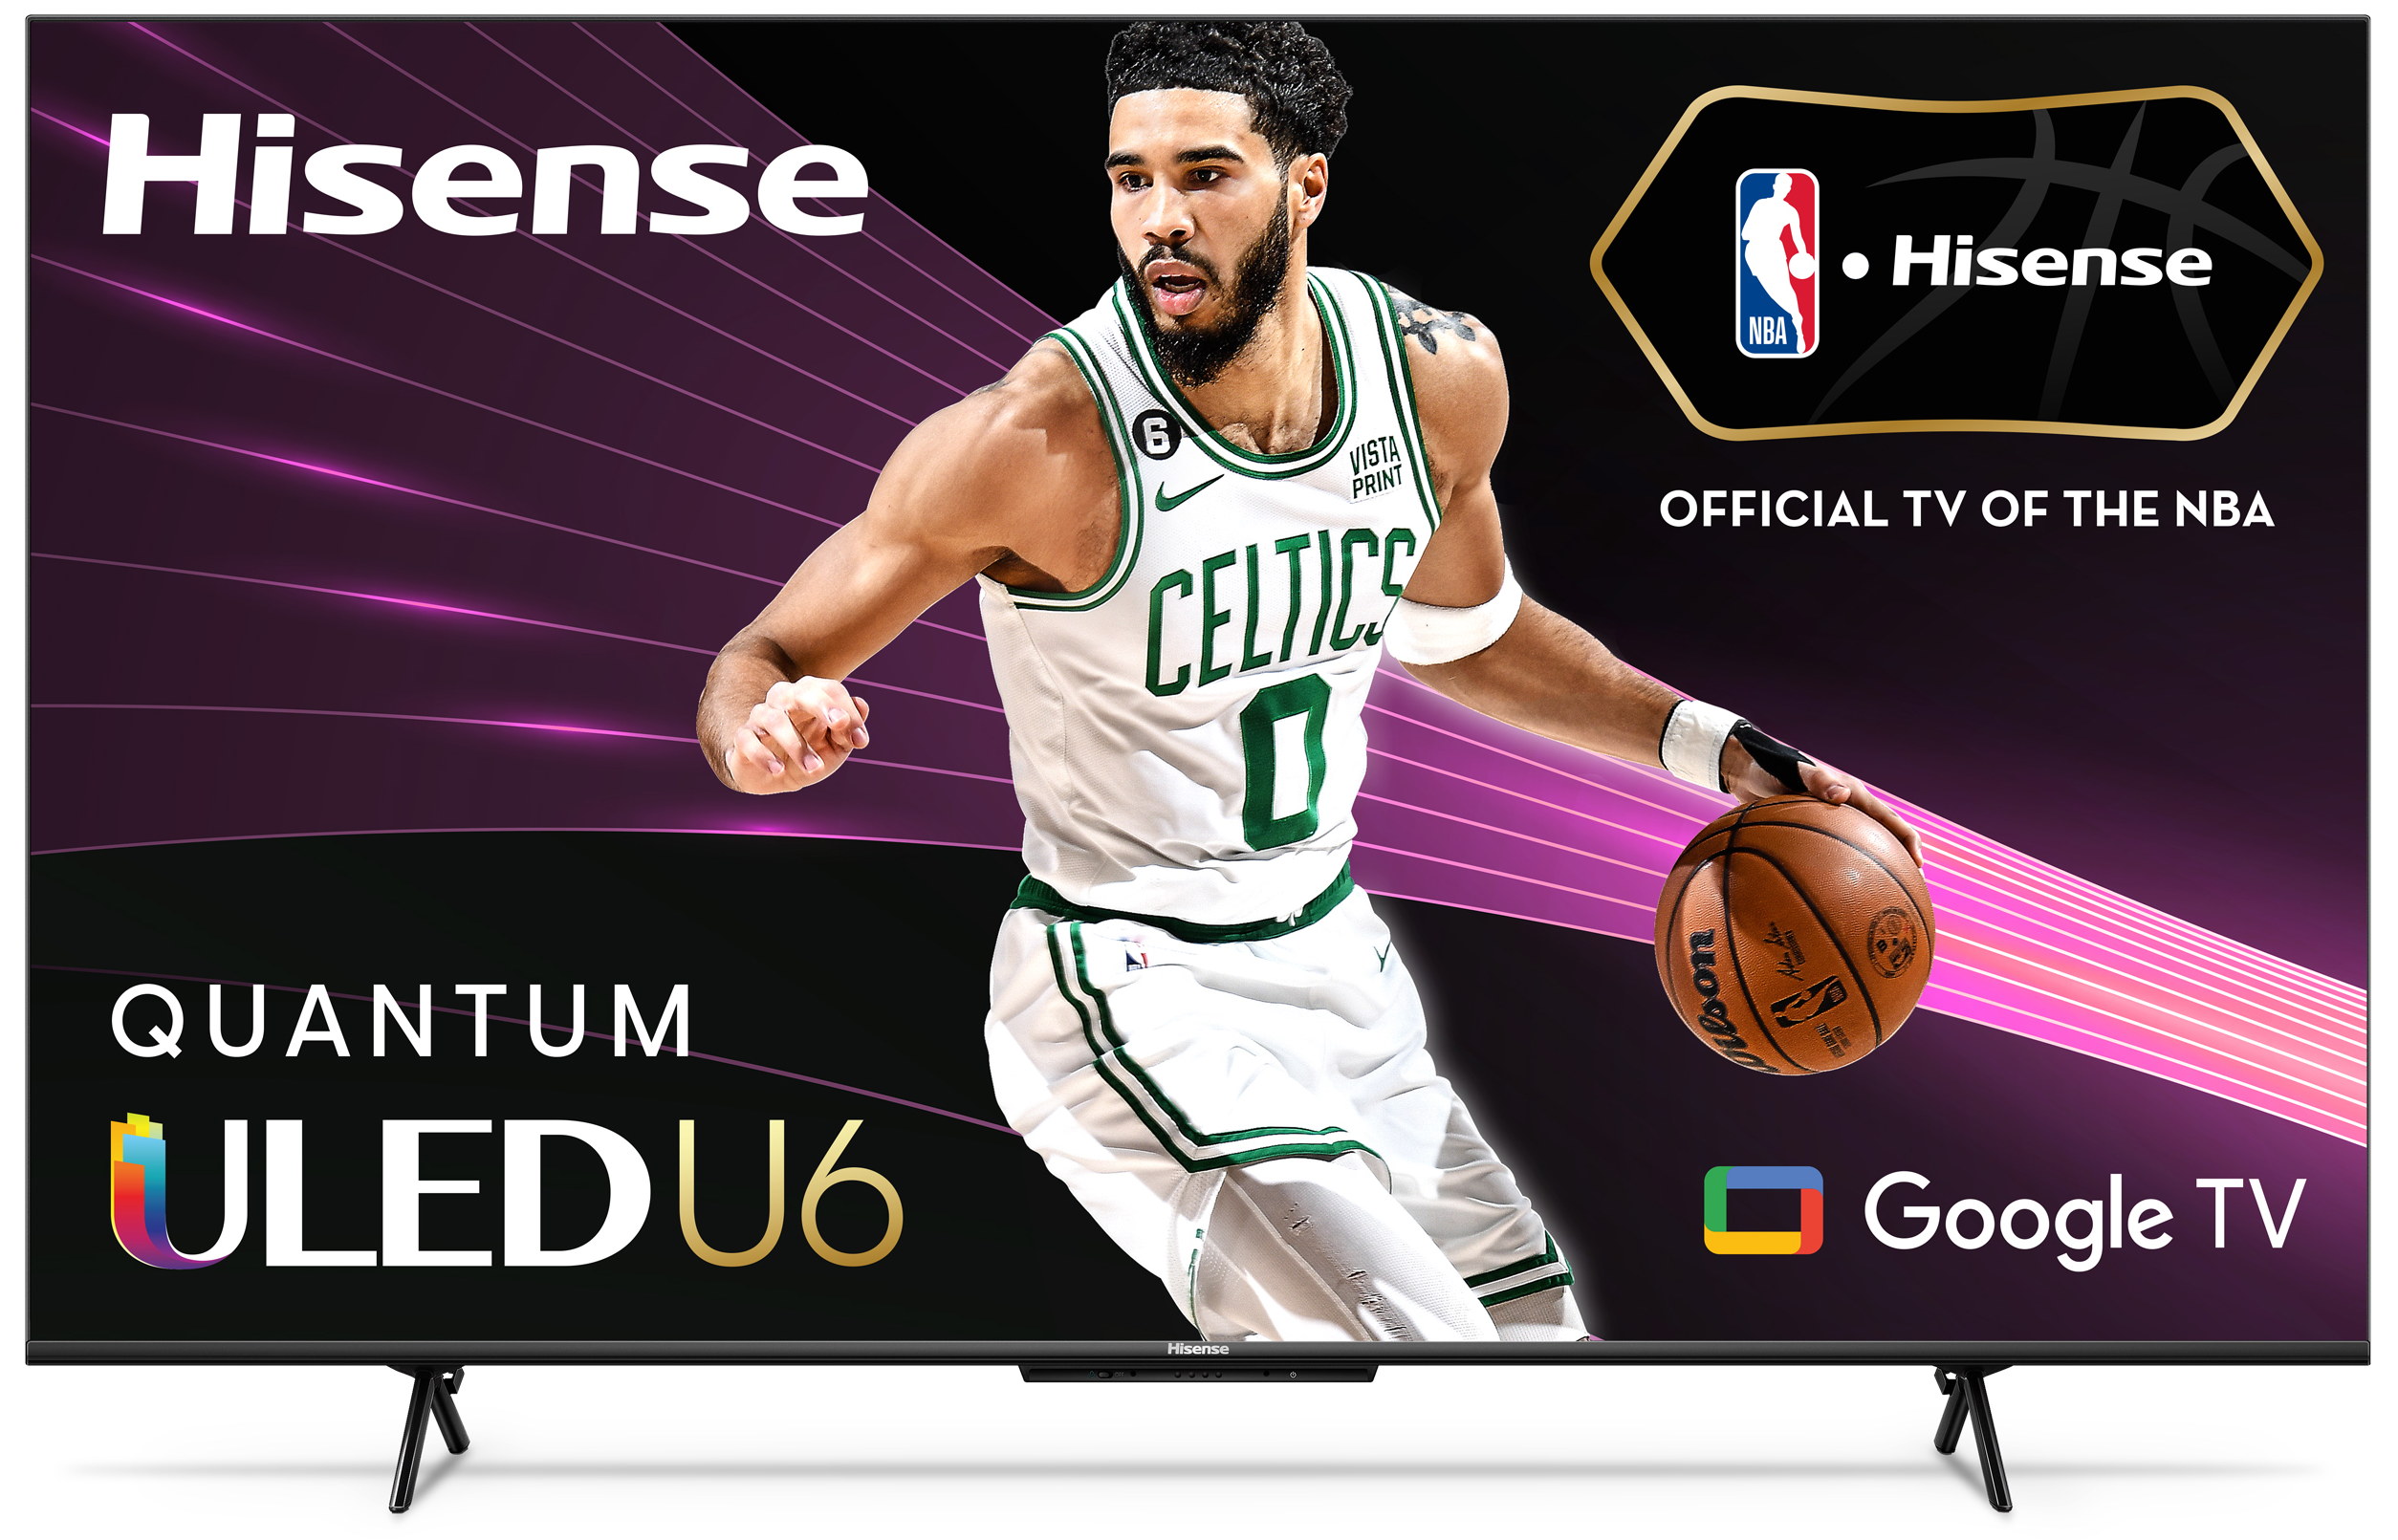 Hisense - 55" Class ULED U6H Series Quantum Dot QLED 4K UHD Smart Google TV (55U6H) - image 1 of 10